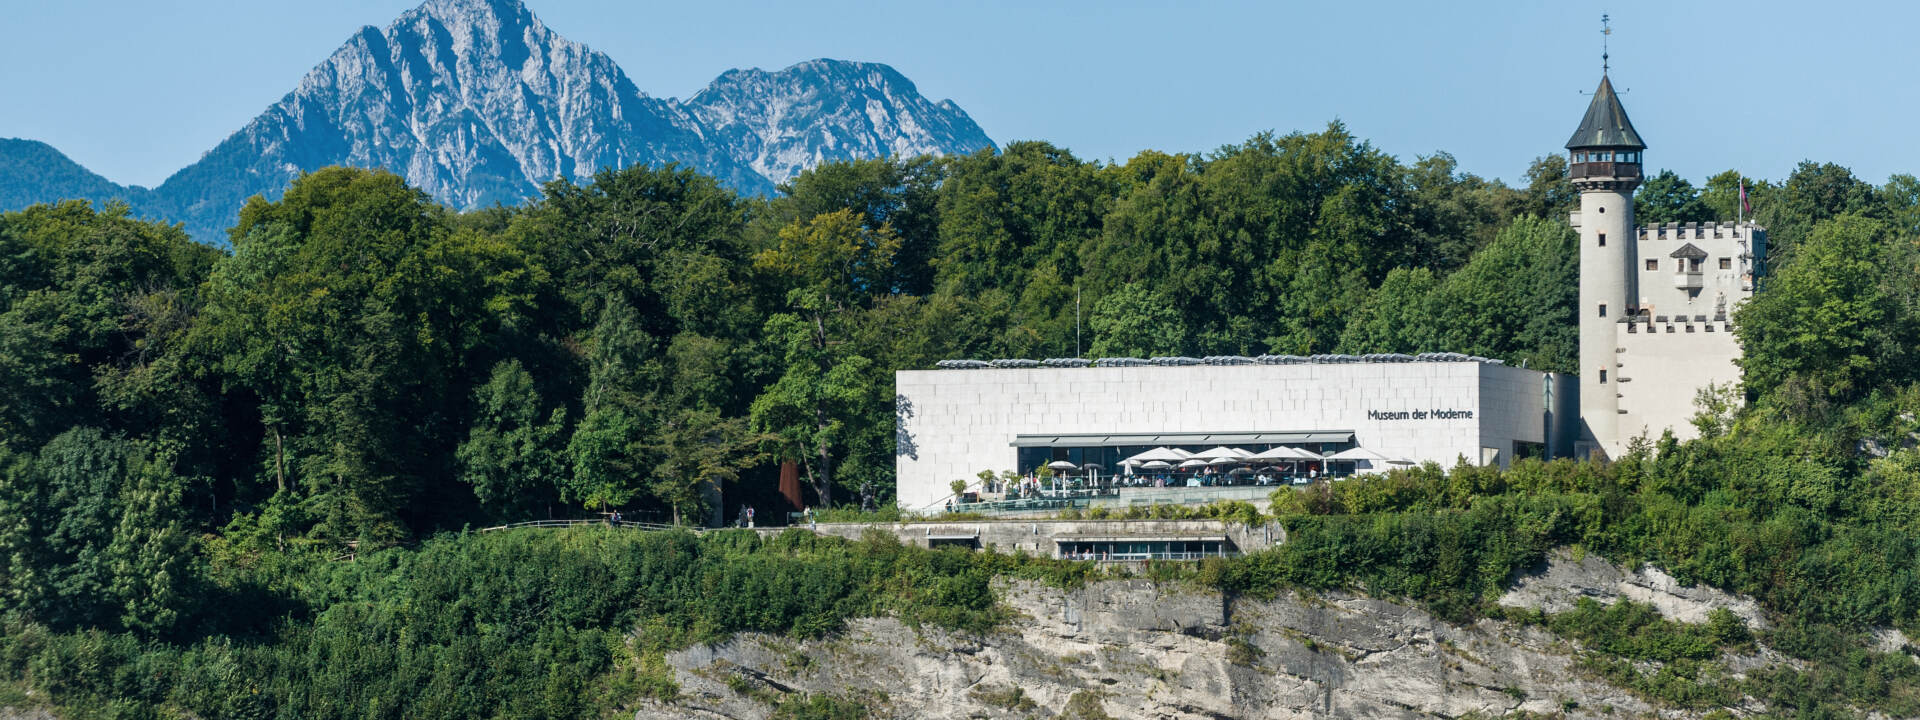 Museum der Moderne Salzburg Mönchsberg - exterior view © Turismus Salzburg GmbH